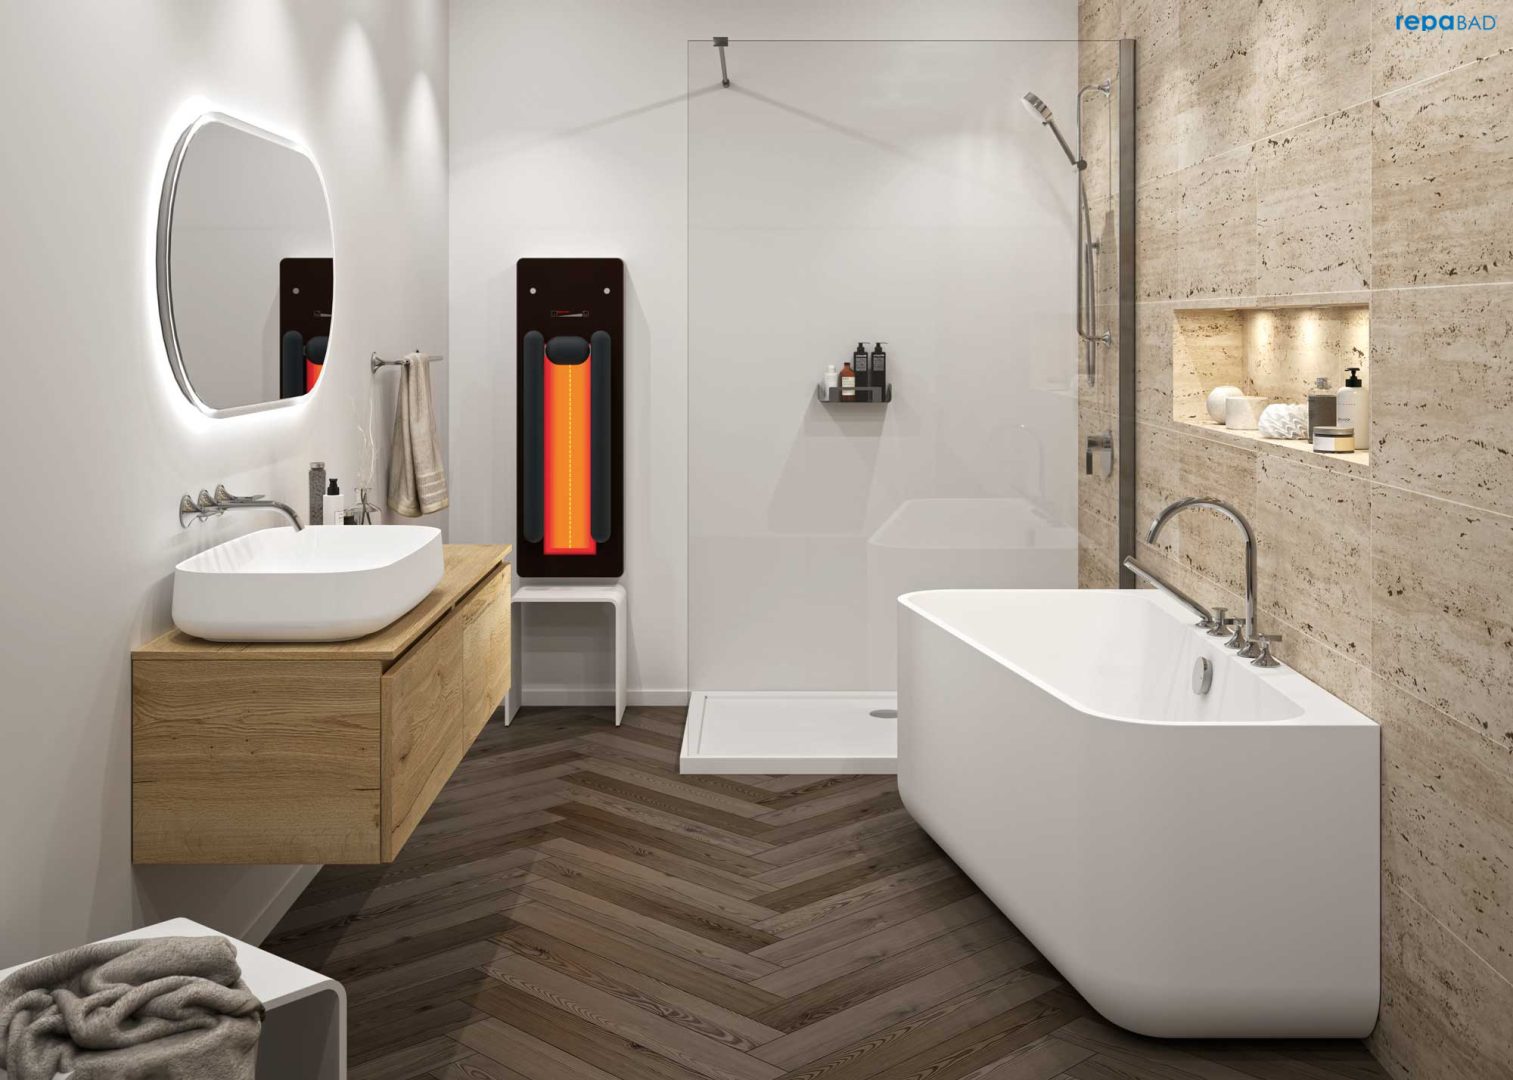 modernes Bad mit großzügiger Dusche und Infrarotpanelle